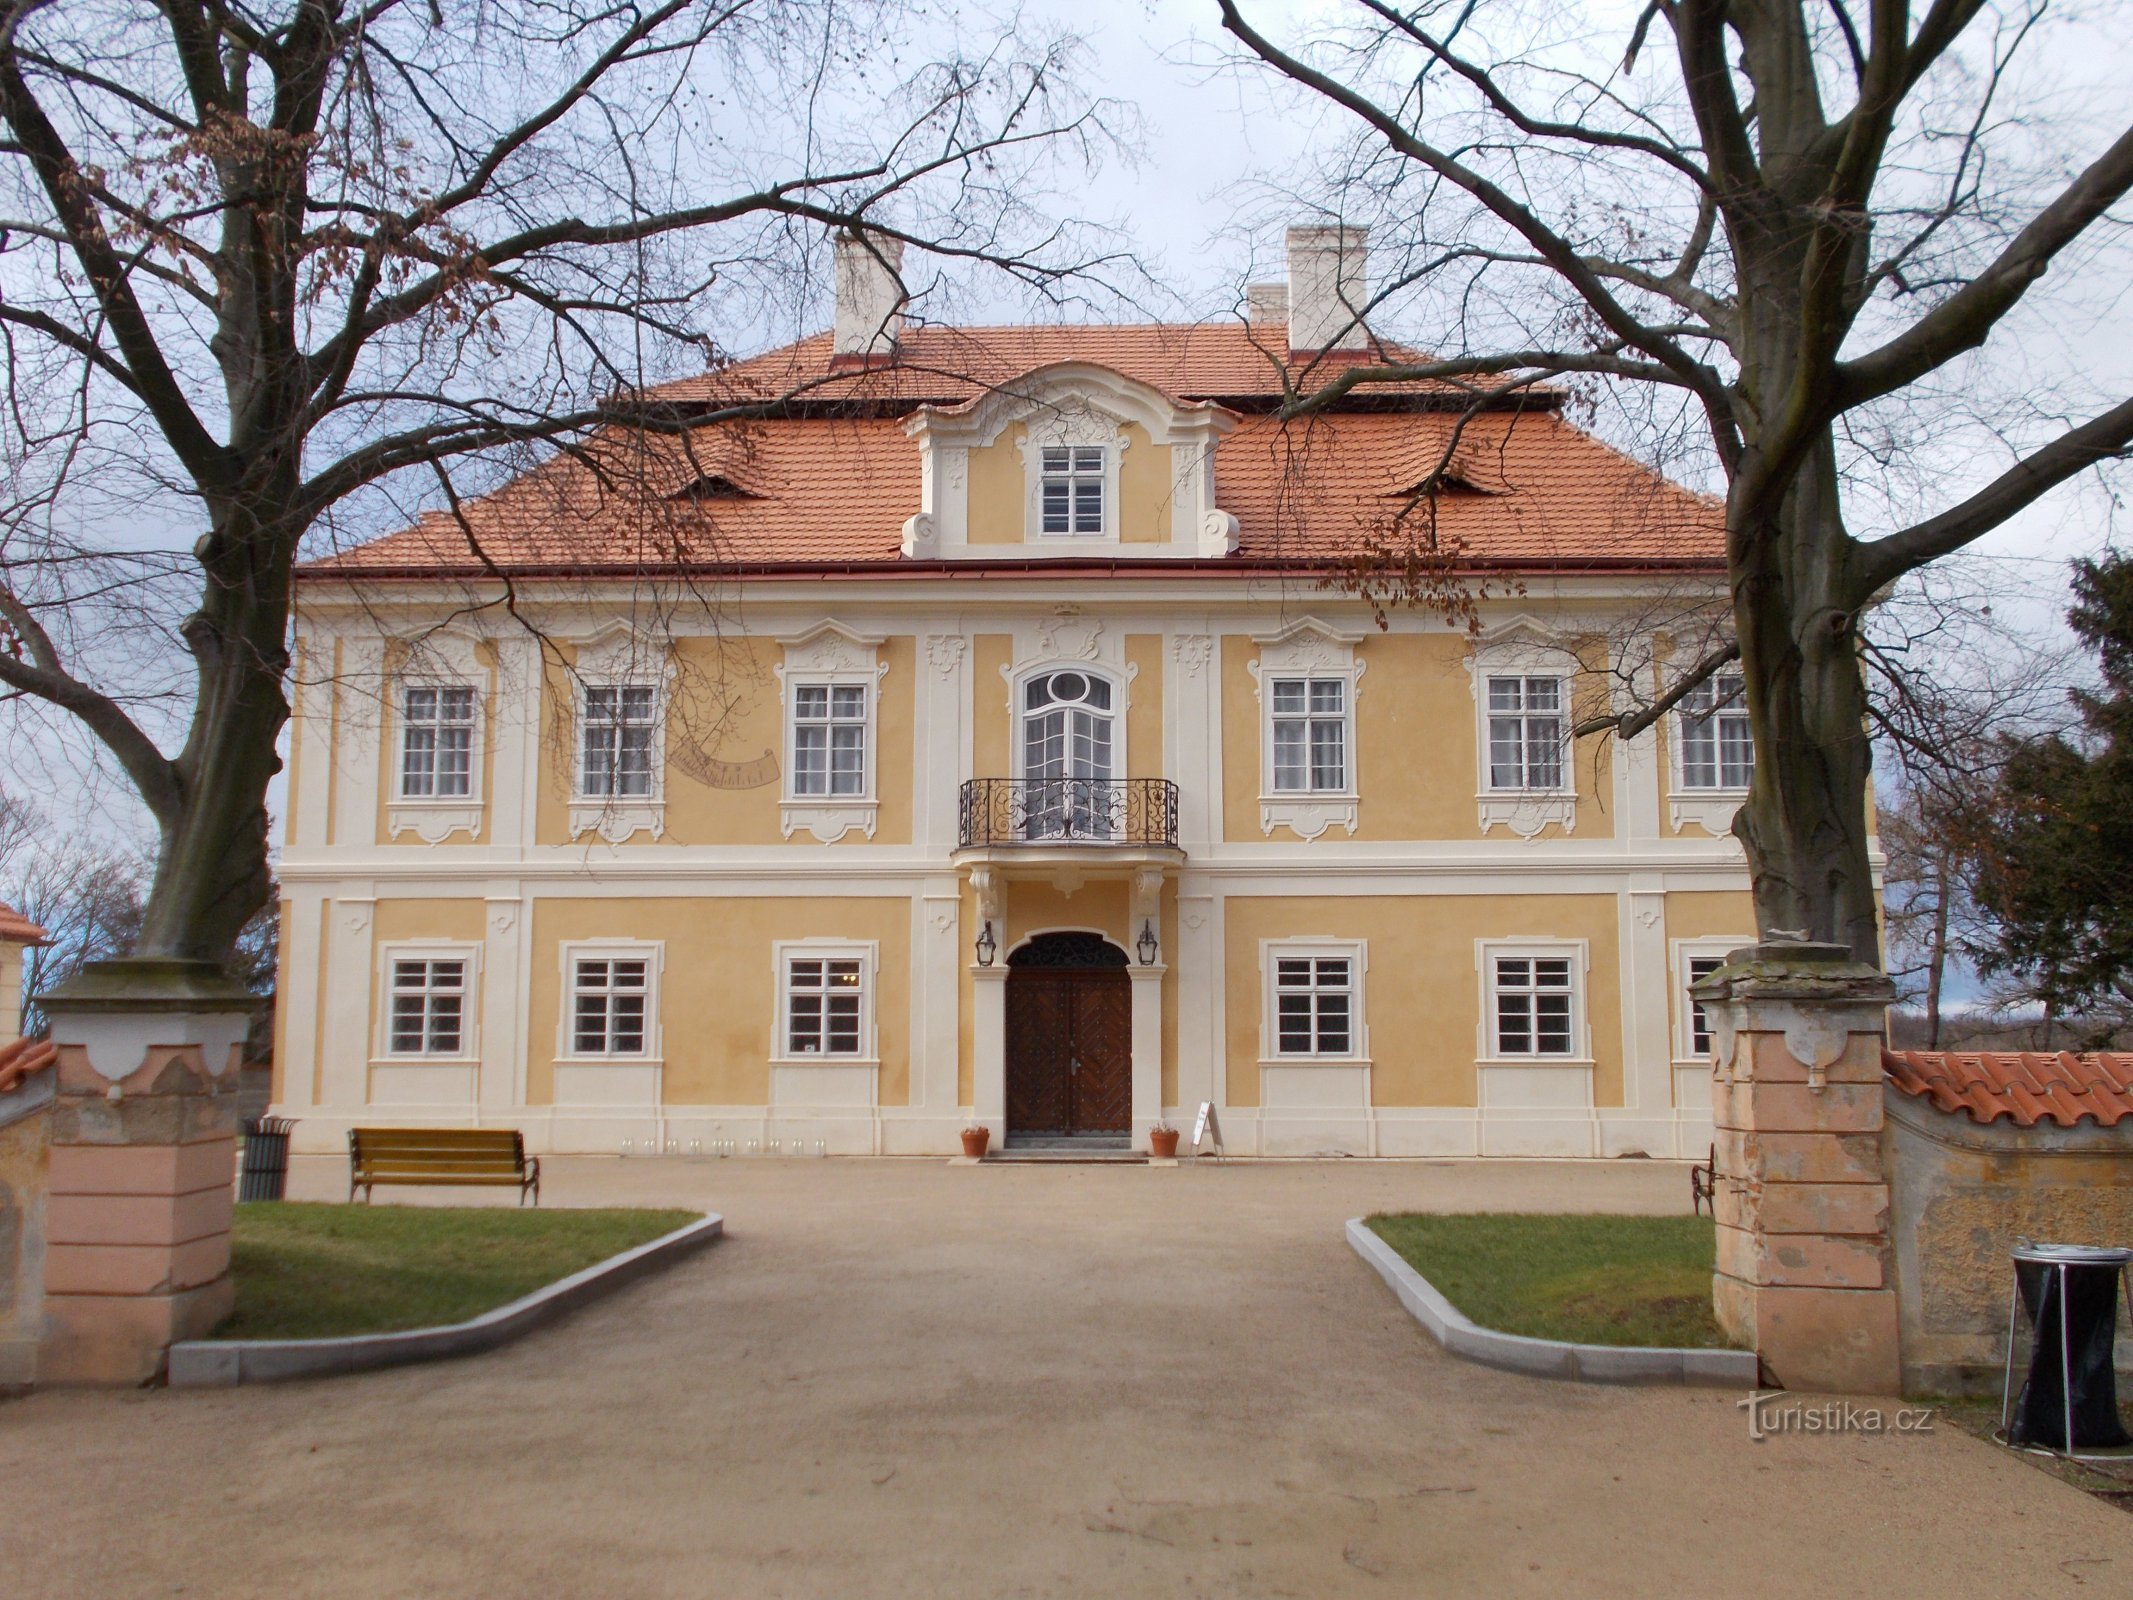 Panenské Břežany - Øvre slot